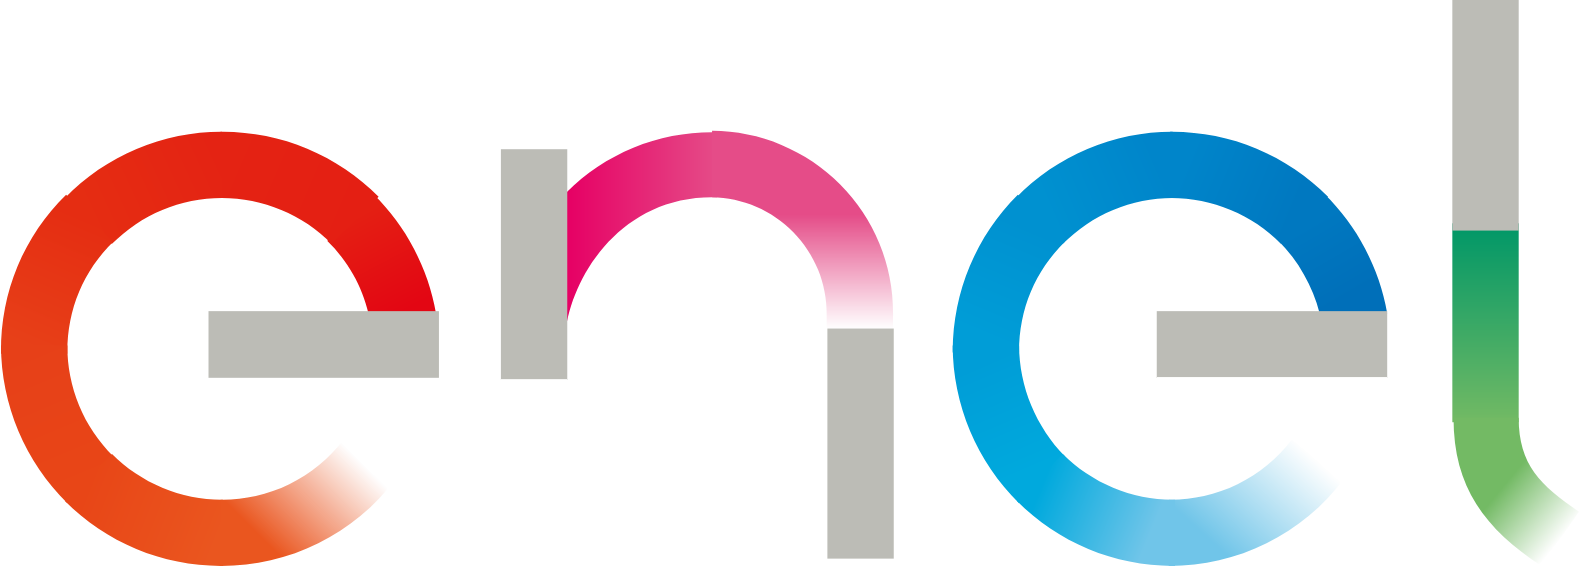 Enel logo large (transparent PNG)